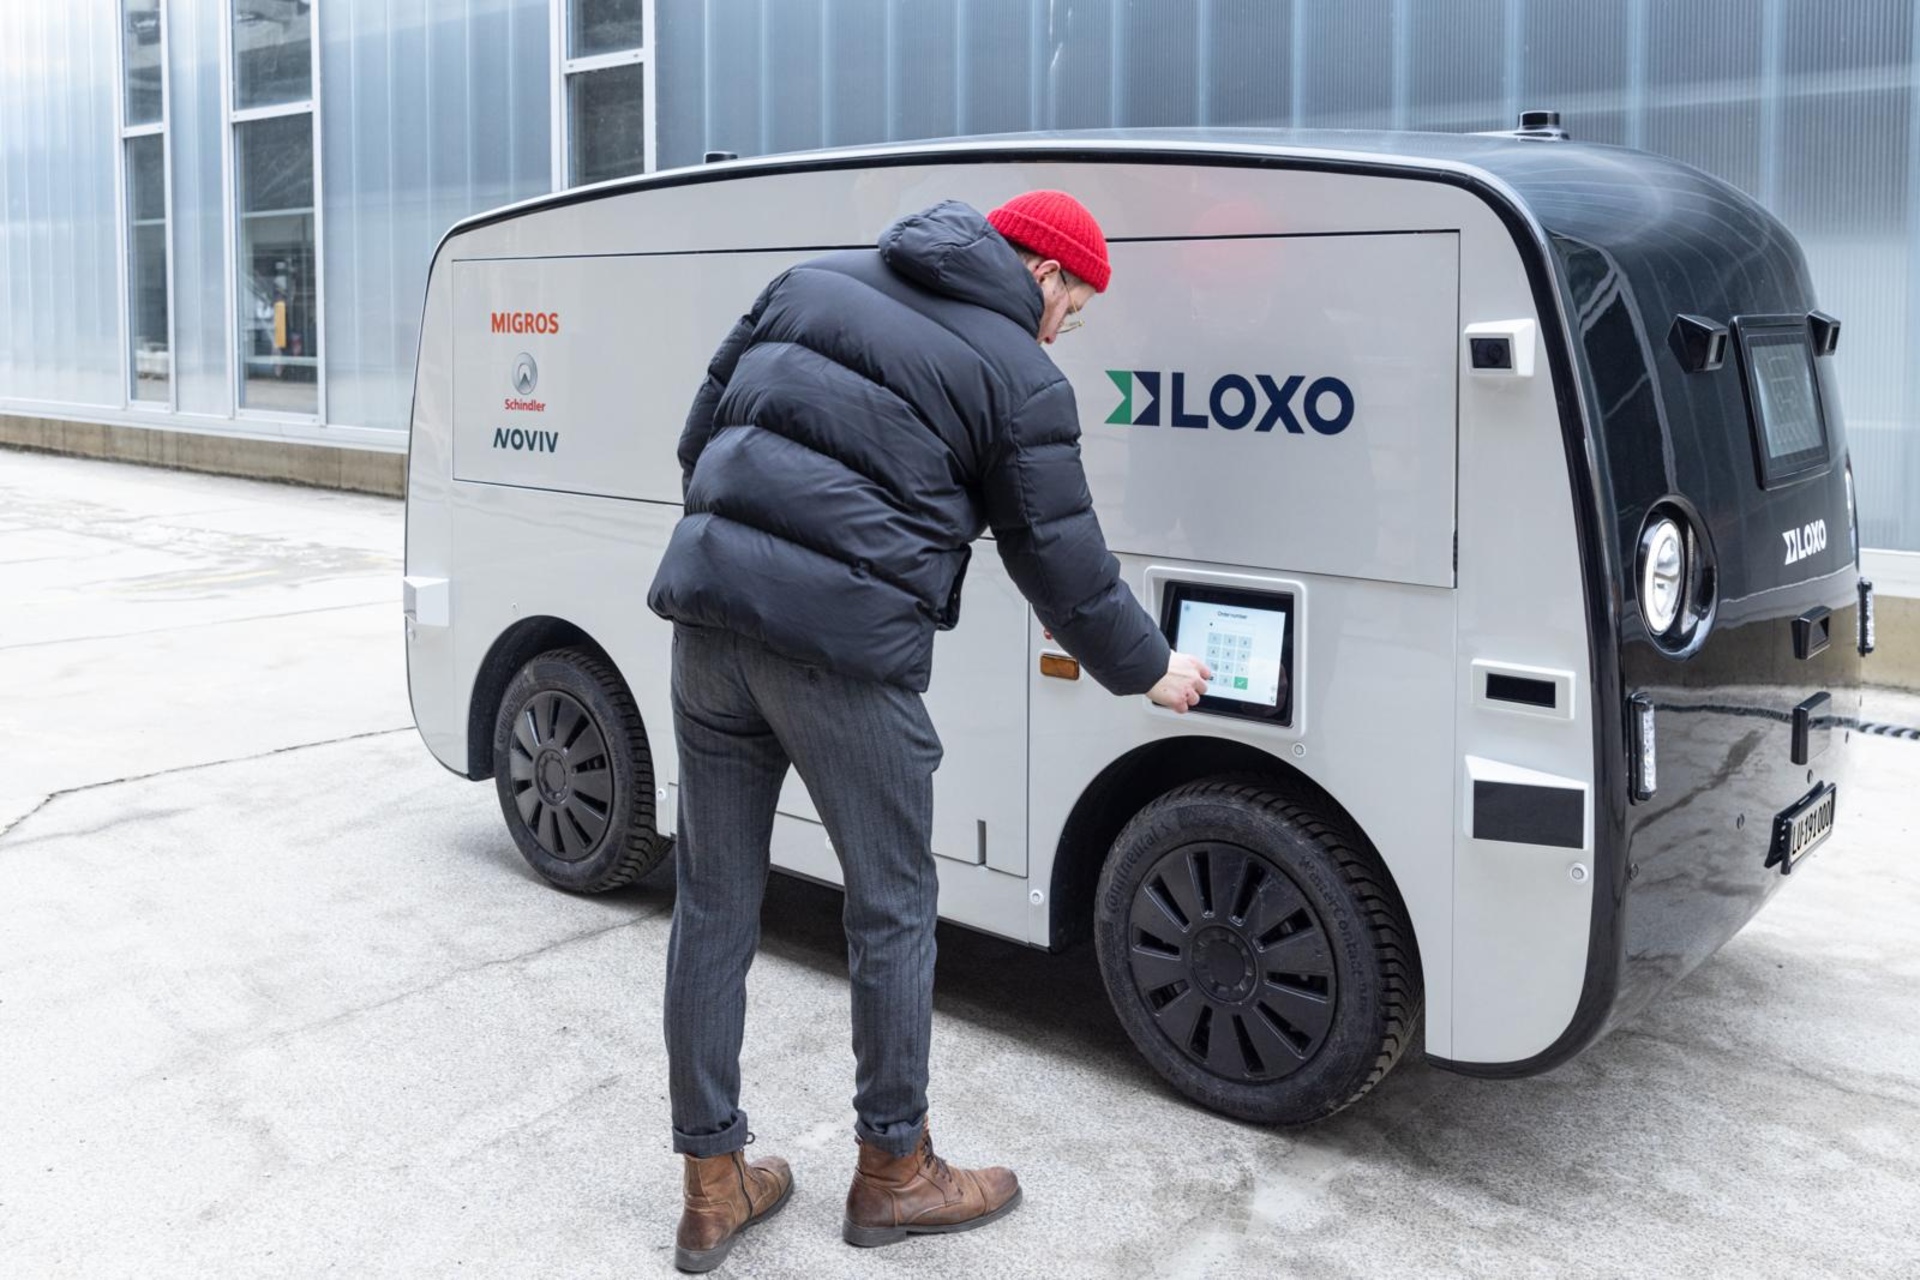 Migronomous: il furgone elettrico a guida autonoma che giornalmente collega il supermercato Migros e gli stabilimenti Schindler di Ebikon nel Canton Lucerna